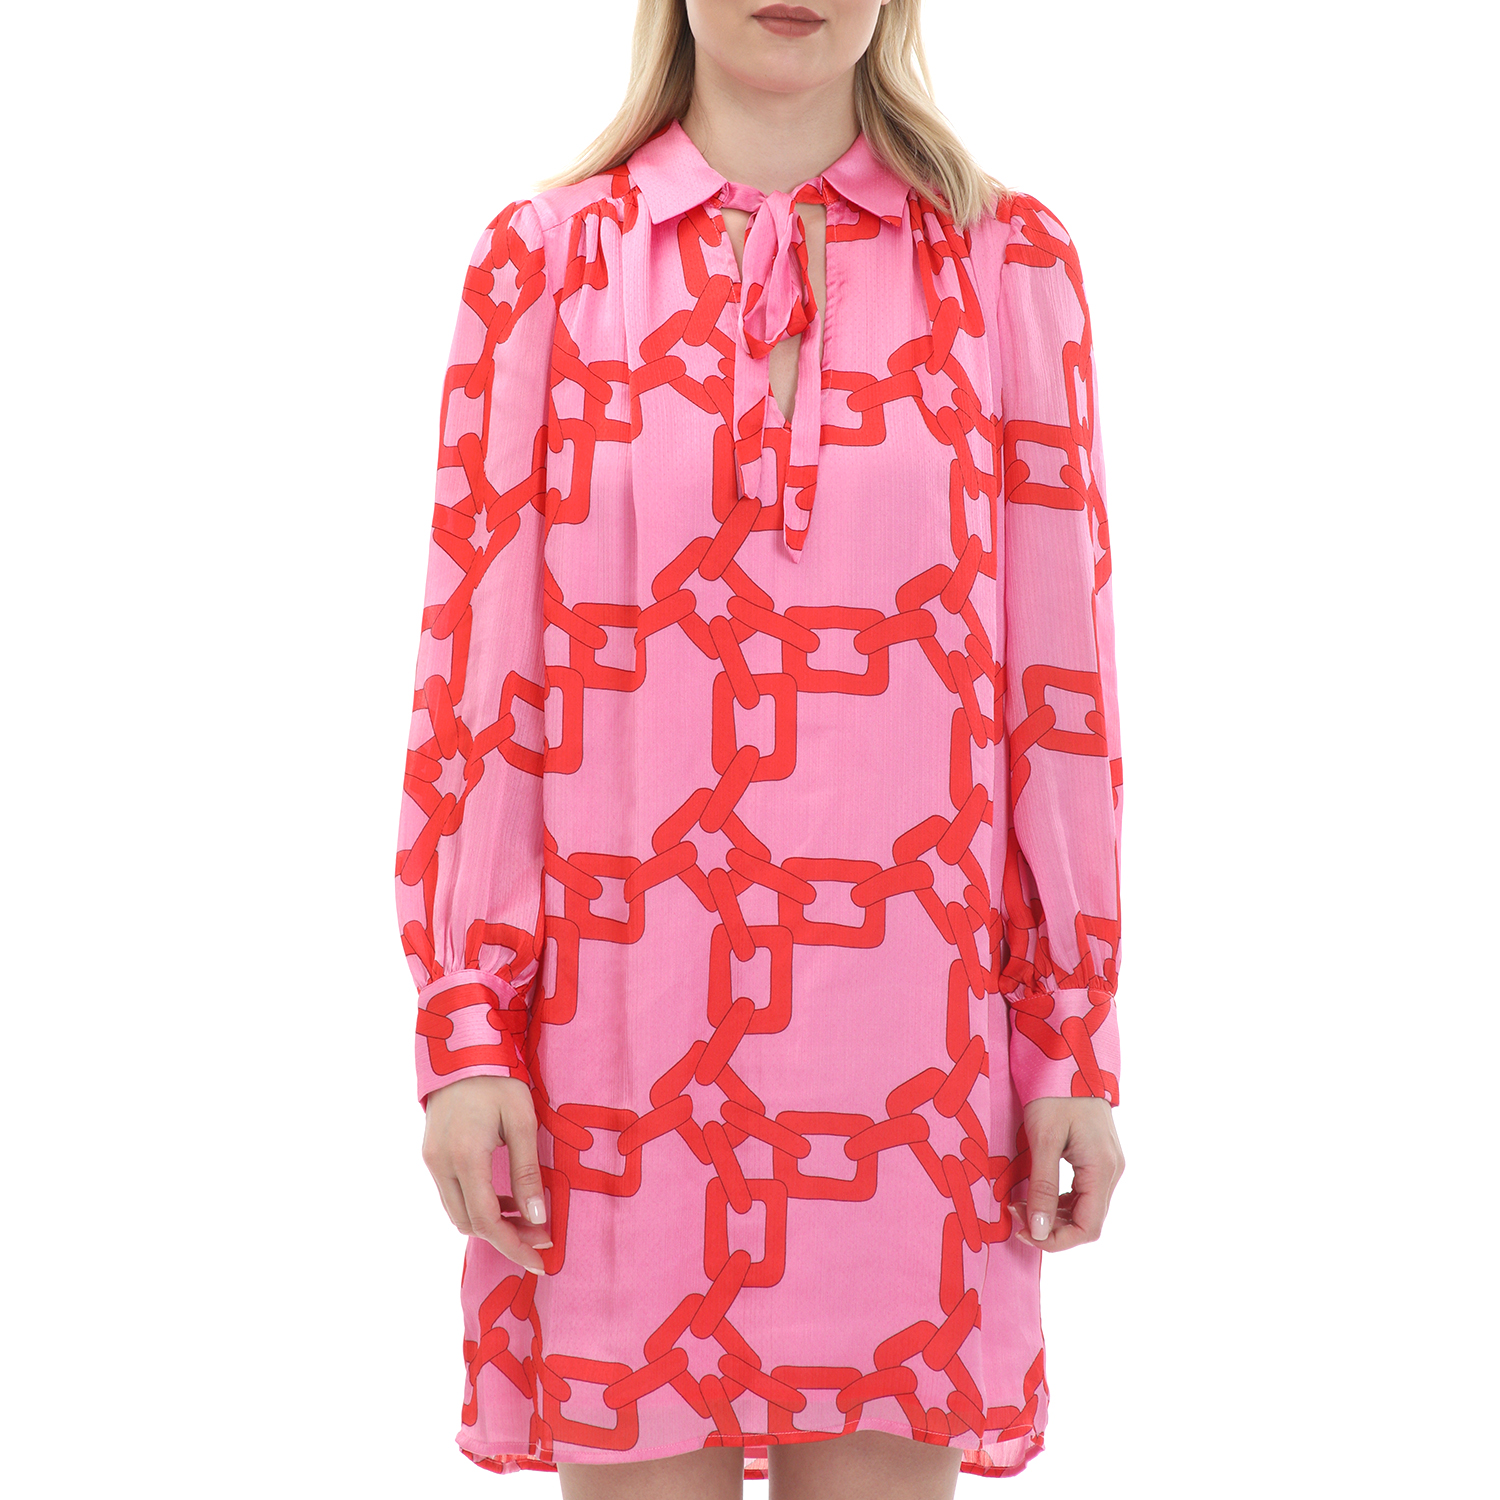 Γυναικεία/Ρούχα/Φορέματα/Μίνι TRAFFIC PEOPLE - Γυναικείο mini φόρεμα TRAFFIC PEOPLE Chain Gang/Maisie ροζ κόκκινο